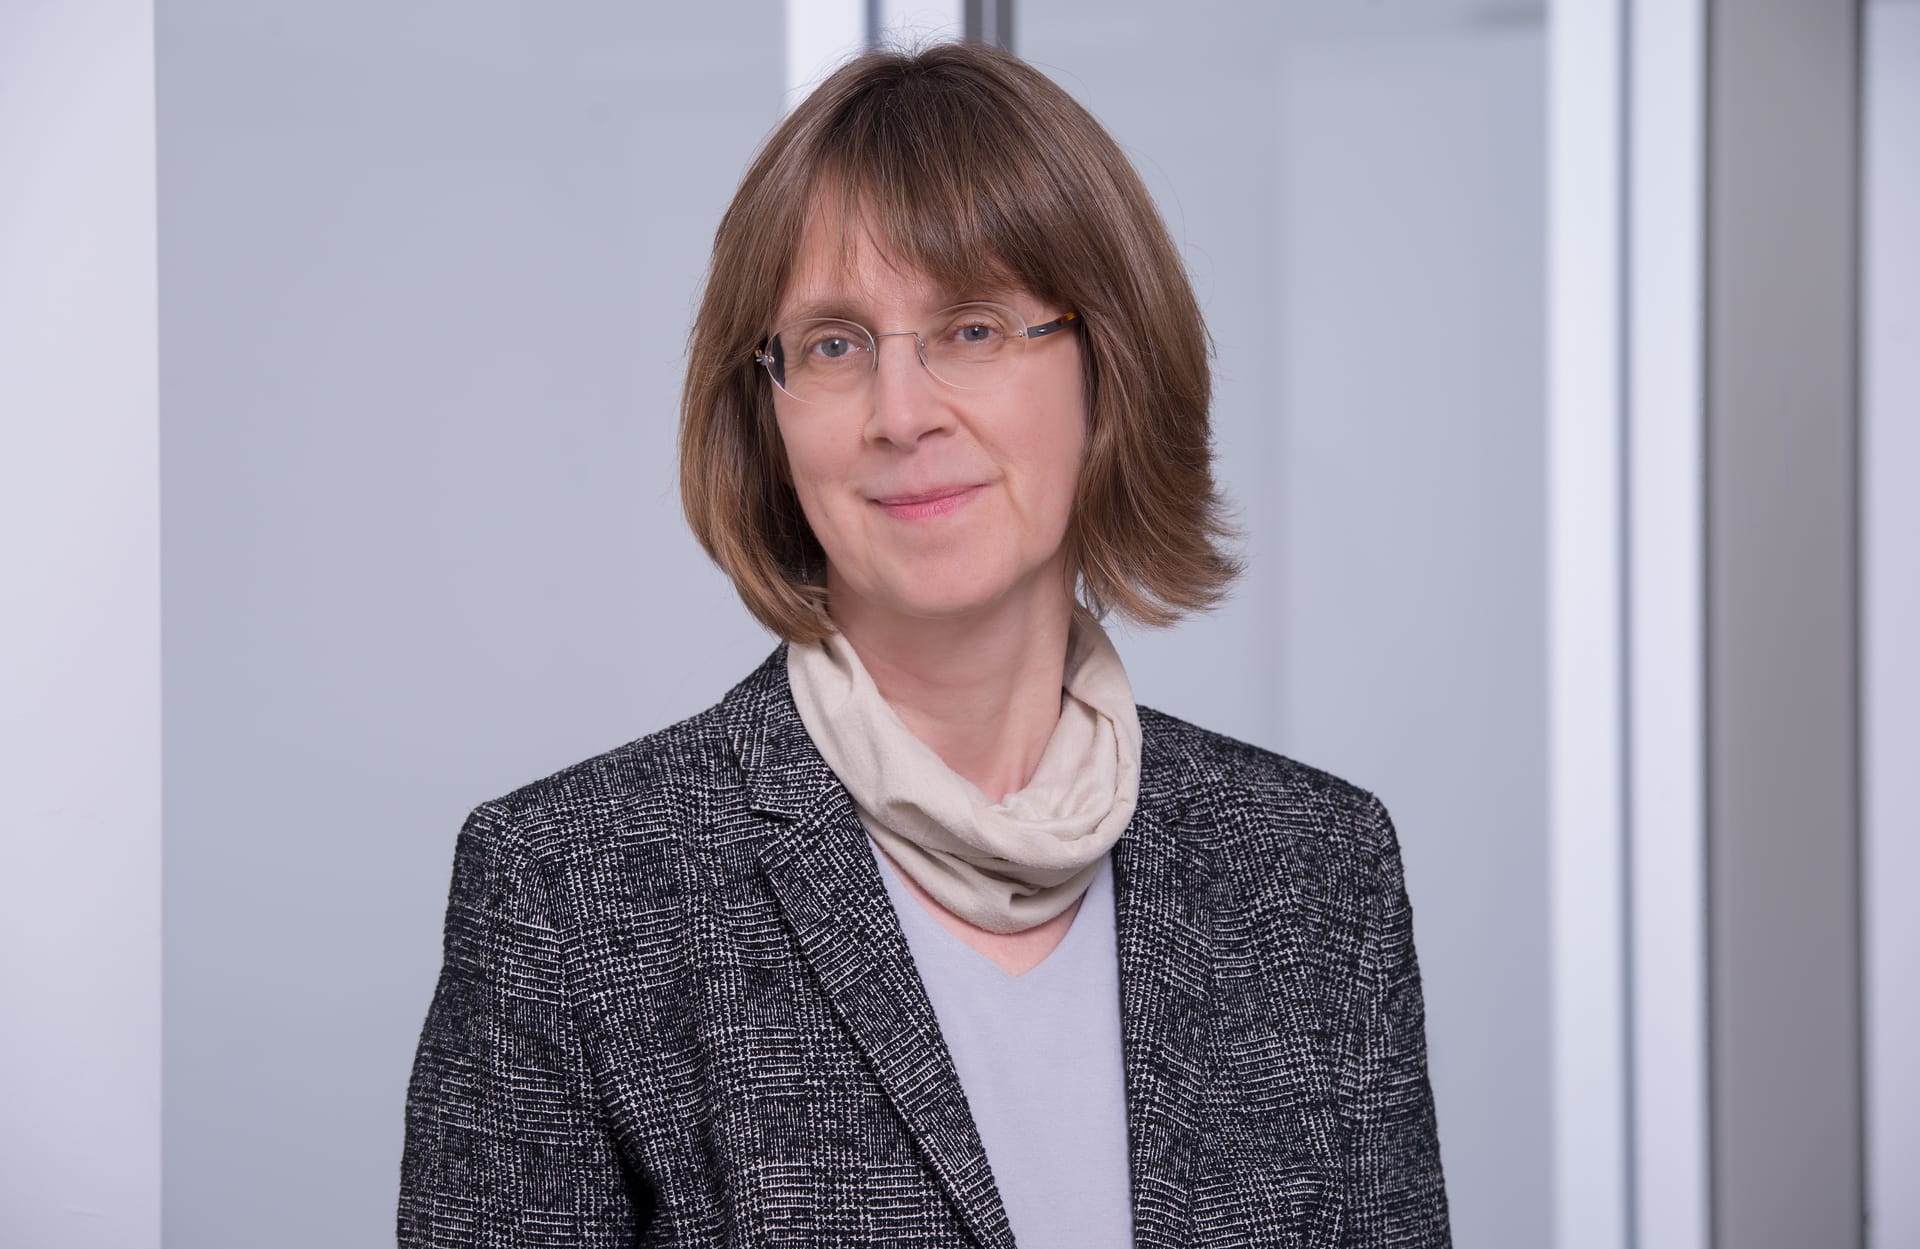 Dr. Susanne Weg-Remers, Leiterin des Krebsinformationsdienstes (KID) am Deutschen Krebsforschungszentrum in Heidelberg (DKFZ). (Quelle: DKFZ, Fotograf Tobias Schwerdt, Wiesenbach)